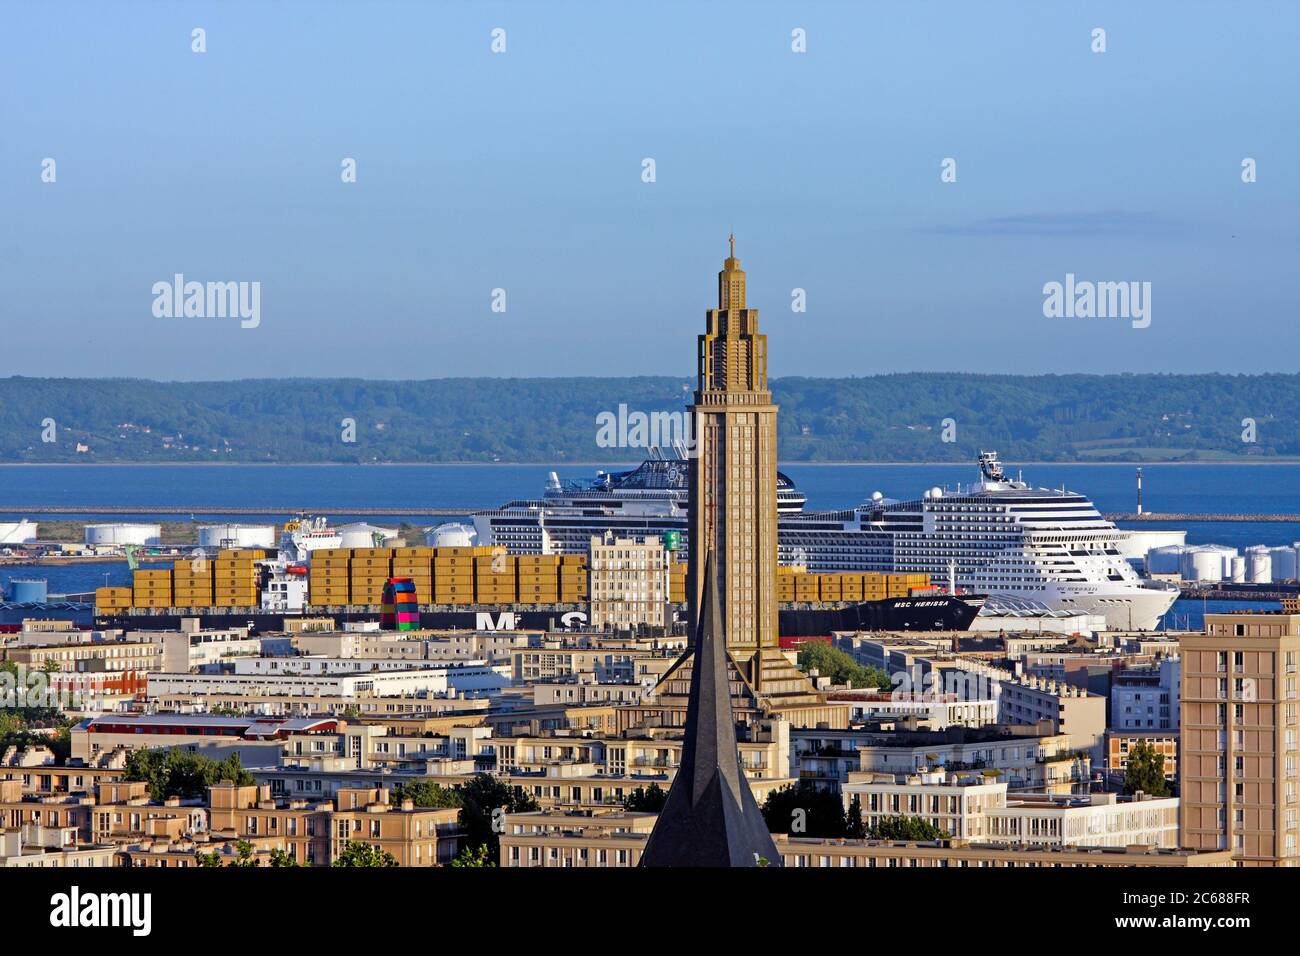 Paesaggio urbano con nave container e nave da crociera ormeggiata nel porto, le Havre, Normandia, Francia Foto Stock